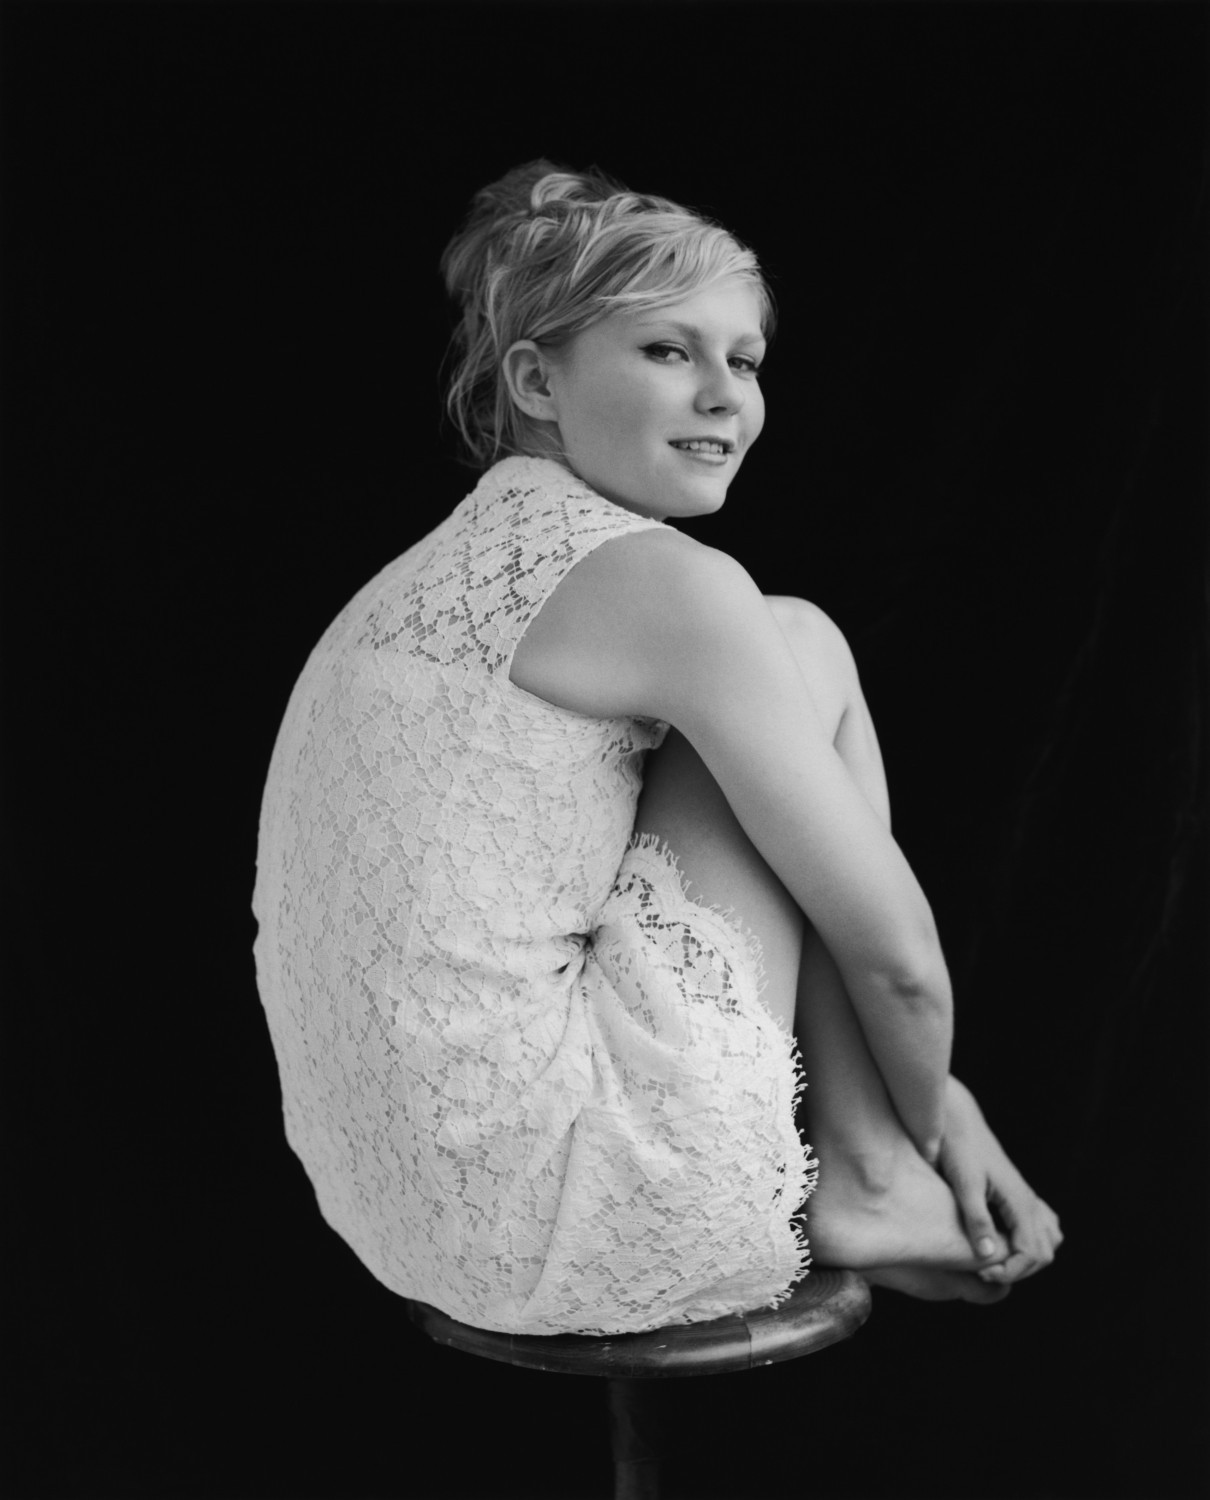 General photo of Kirsten Dunst